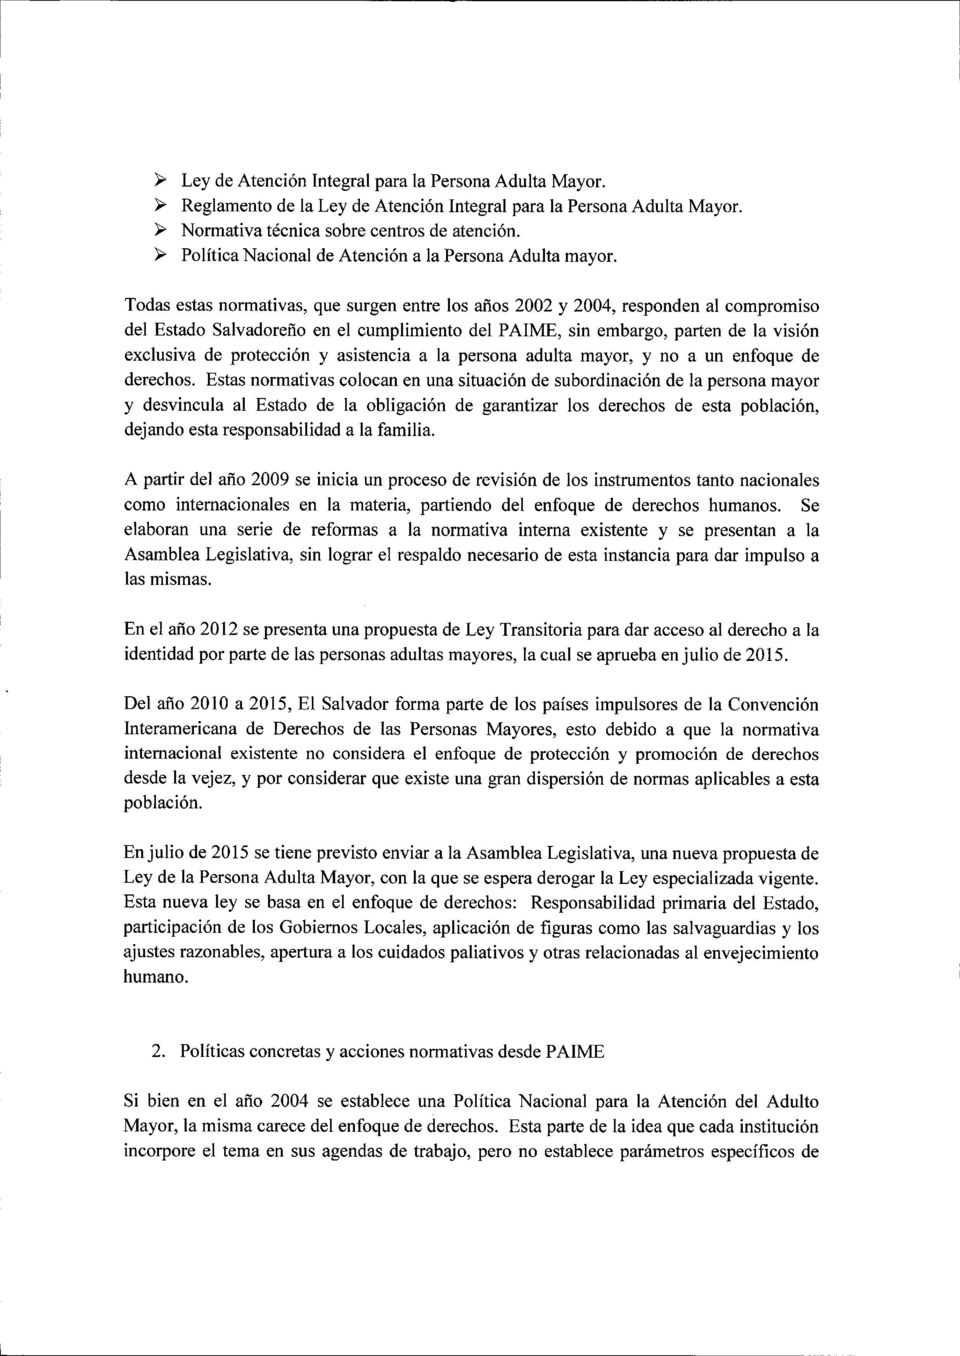 Todas estas normativas, que surgen entre los años 2002 y 2004, responden al compromiso del Estado Salvadoreño en el cumplimiento del PAlME, sin embargo, parten de la visión exclusiva de protección y